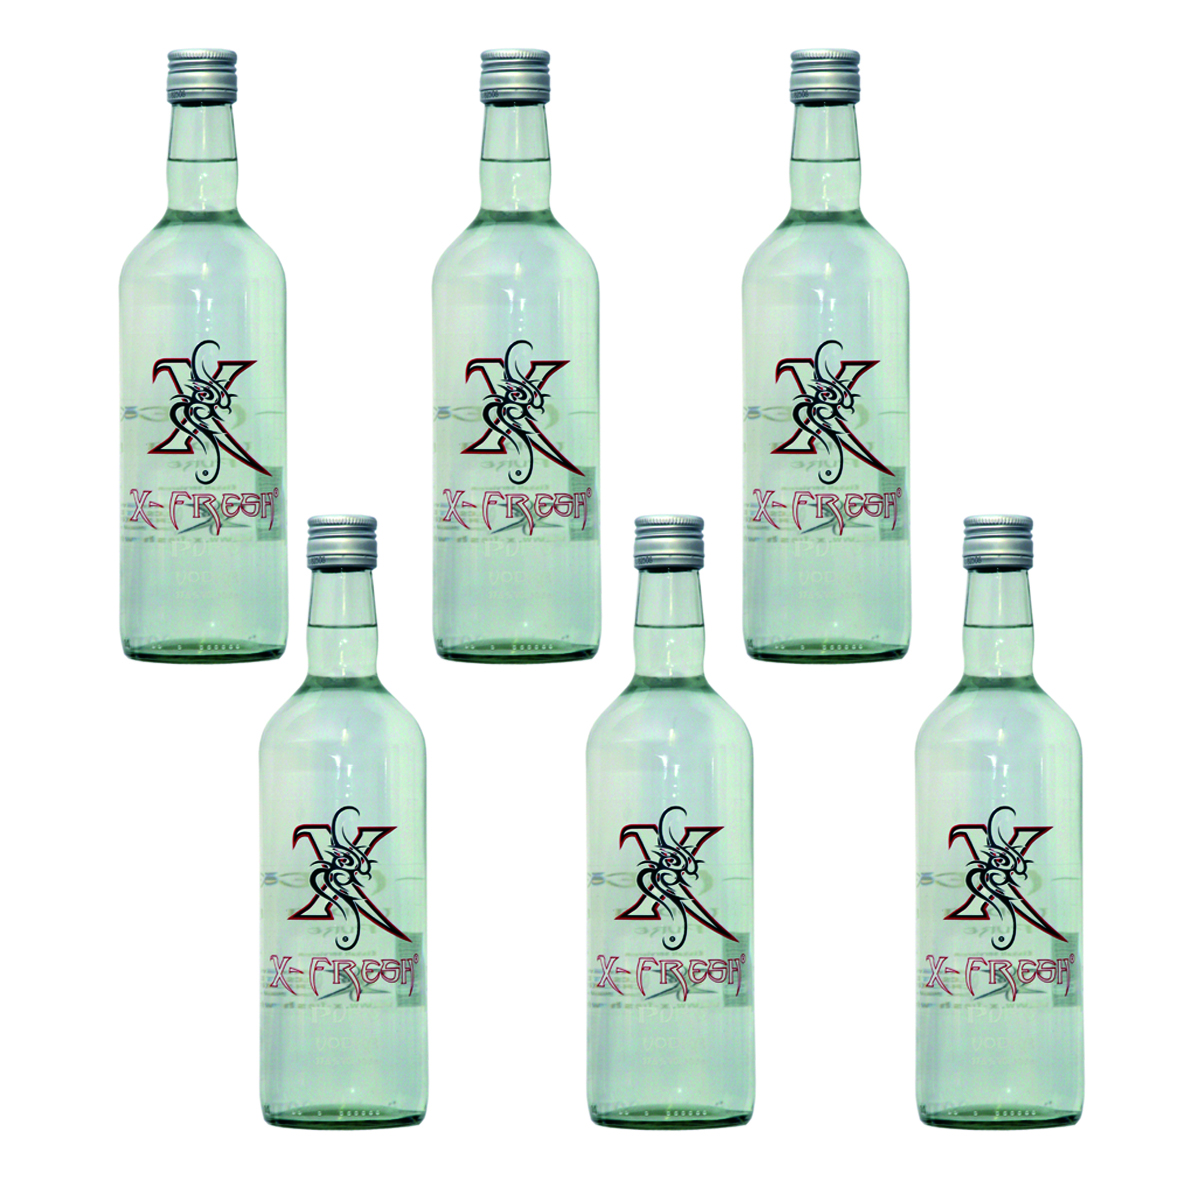 X-Fresh Vodka Pure 6 x 0.7 Ltr. (6er-Box) 37.5 Vol. / Verkauf nur ab 18 Jahren / Kein Export 